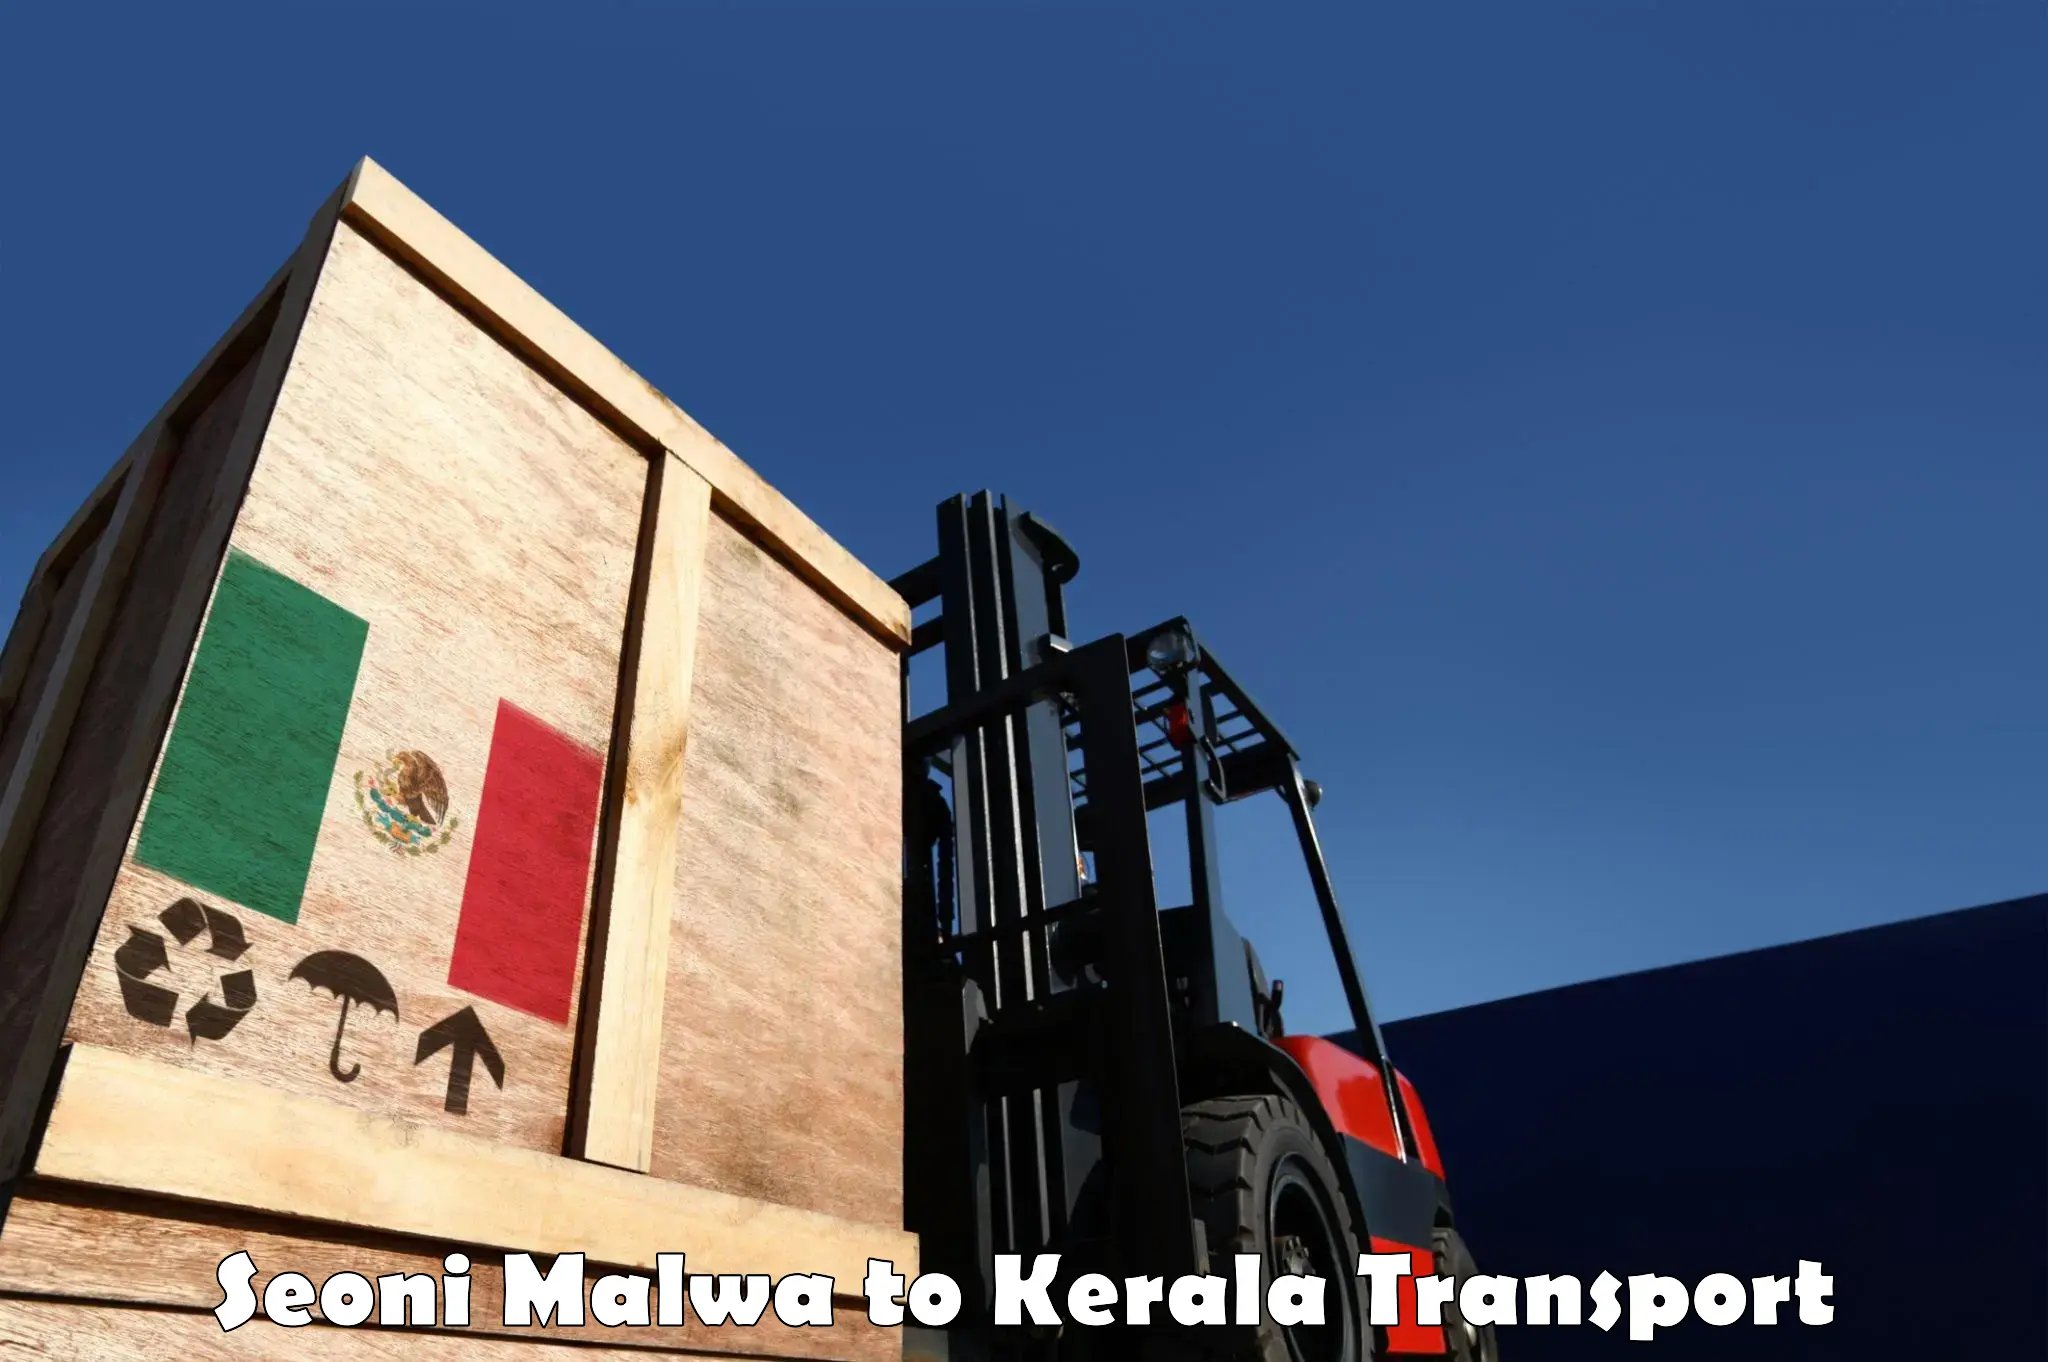 Lorry transport service in Seoni Malwa to Haripad